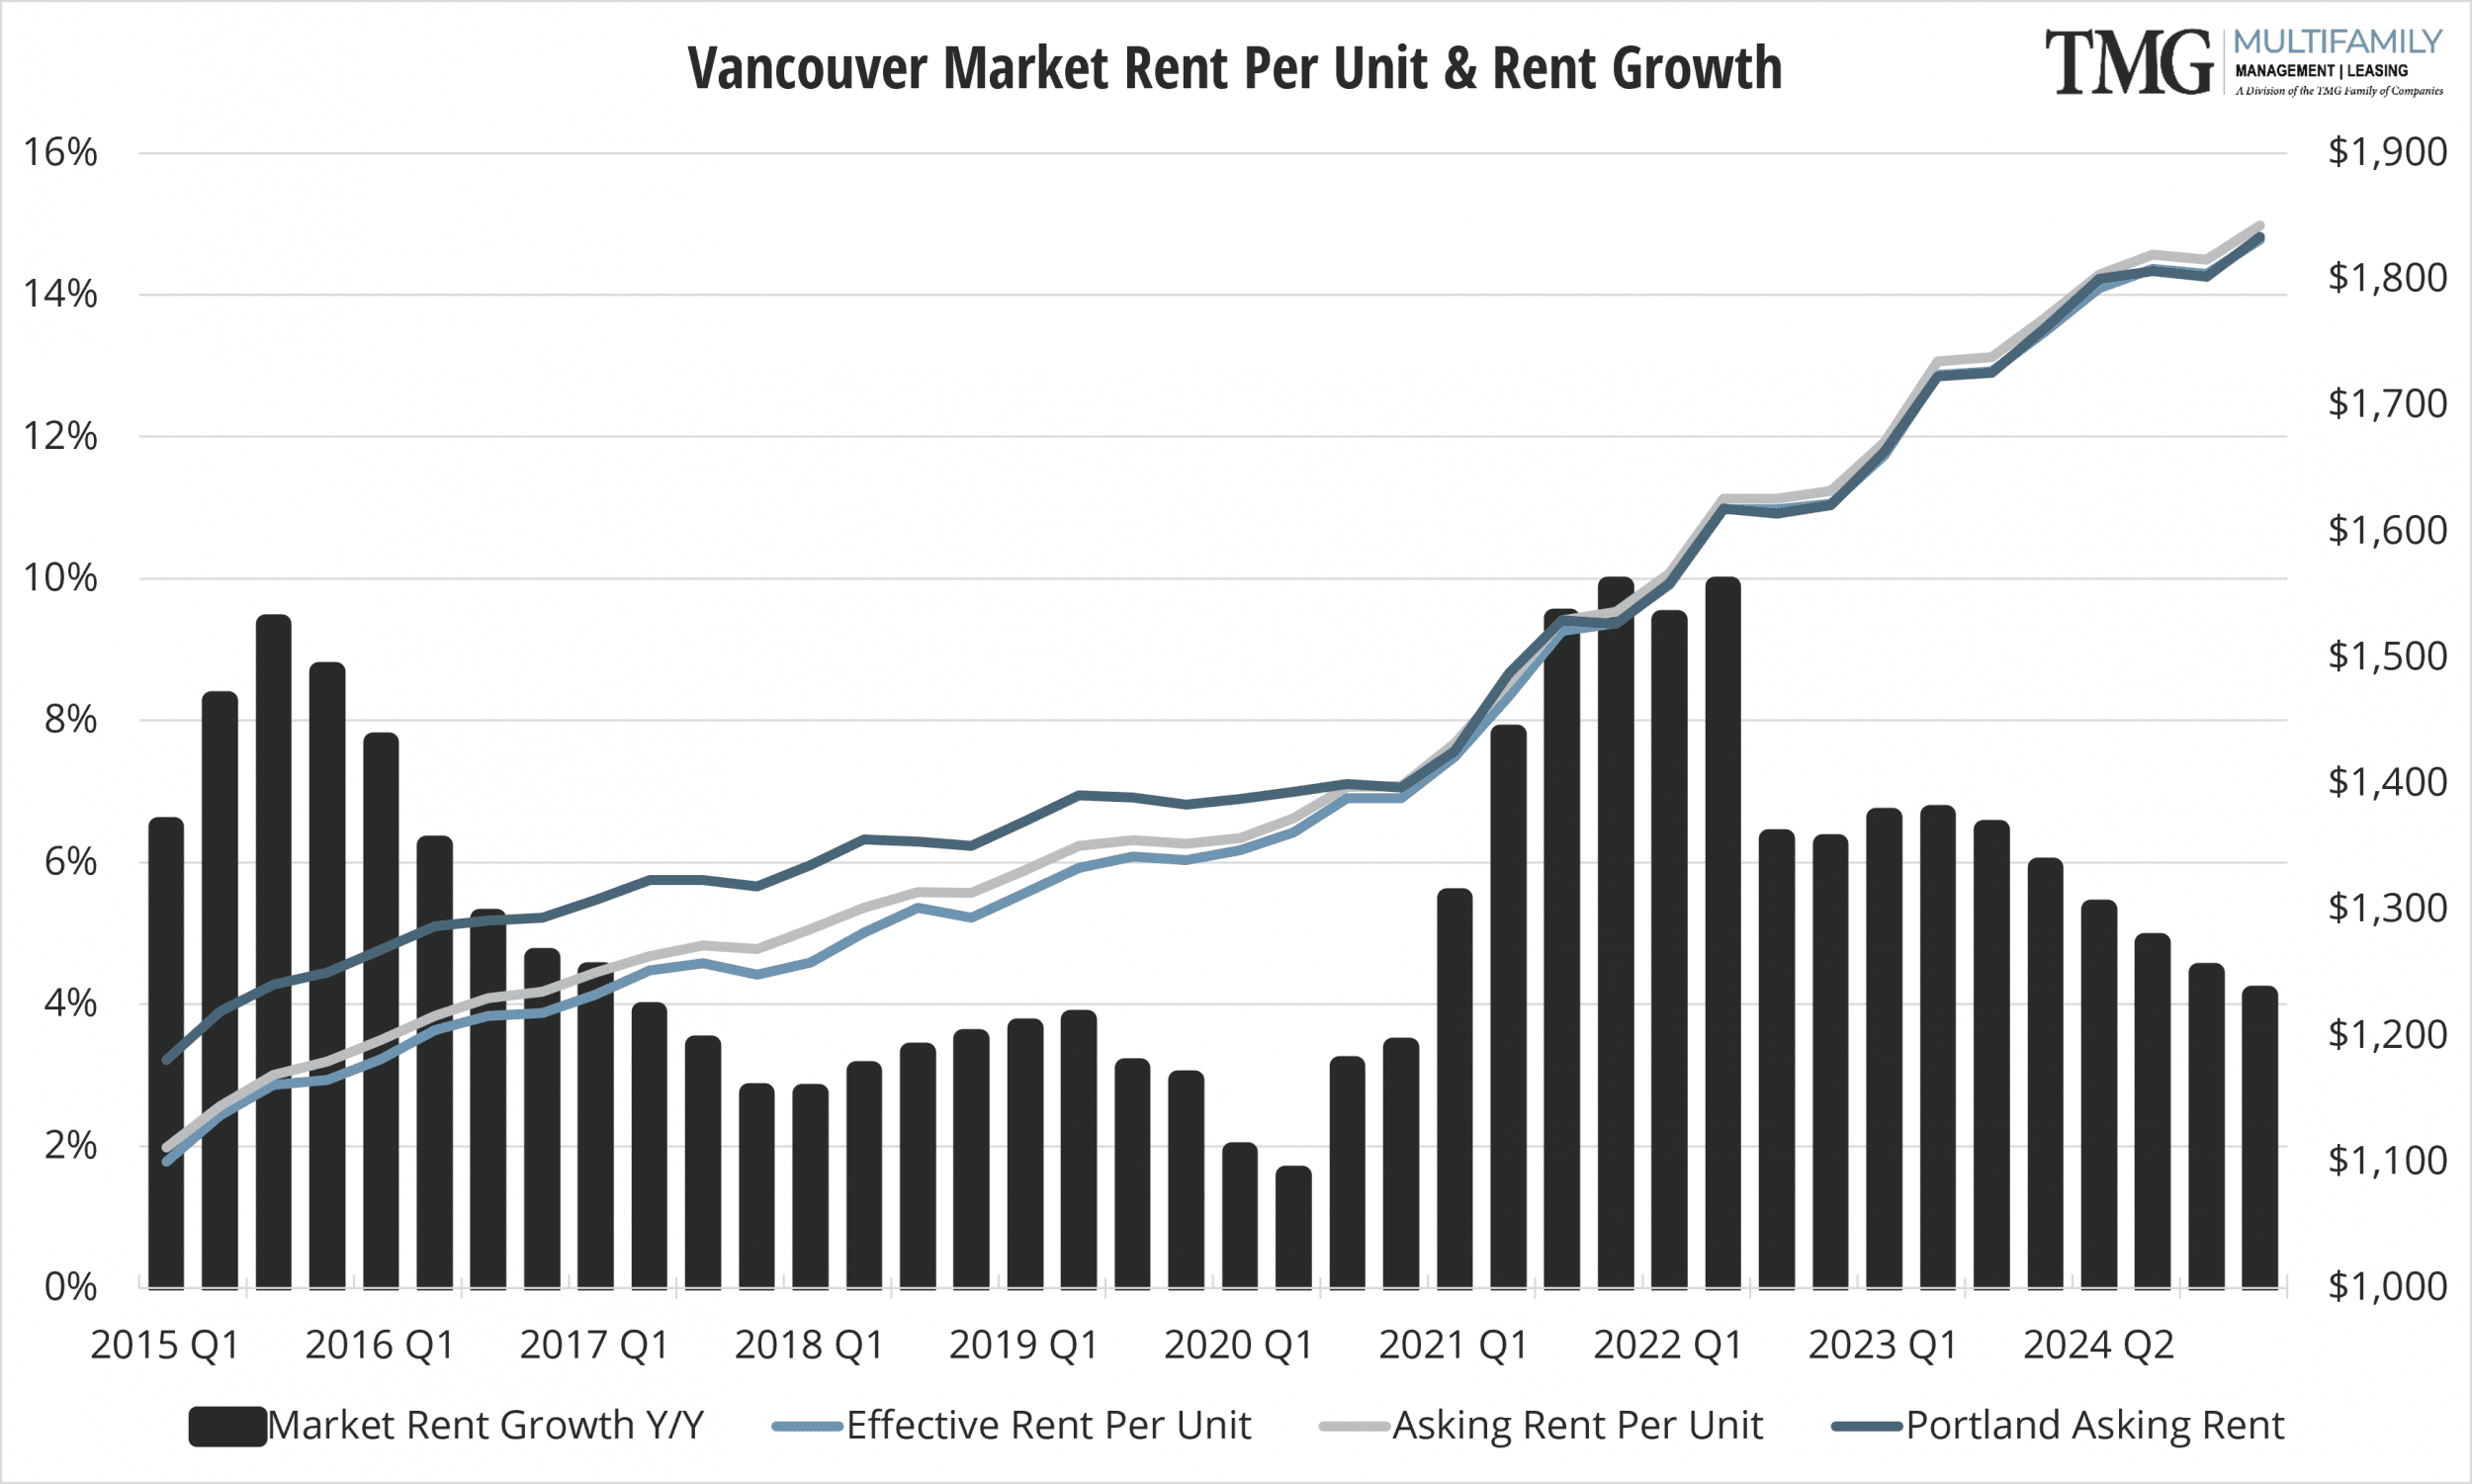 Vancouver Market Rent Per Unit & Rent Growth